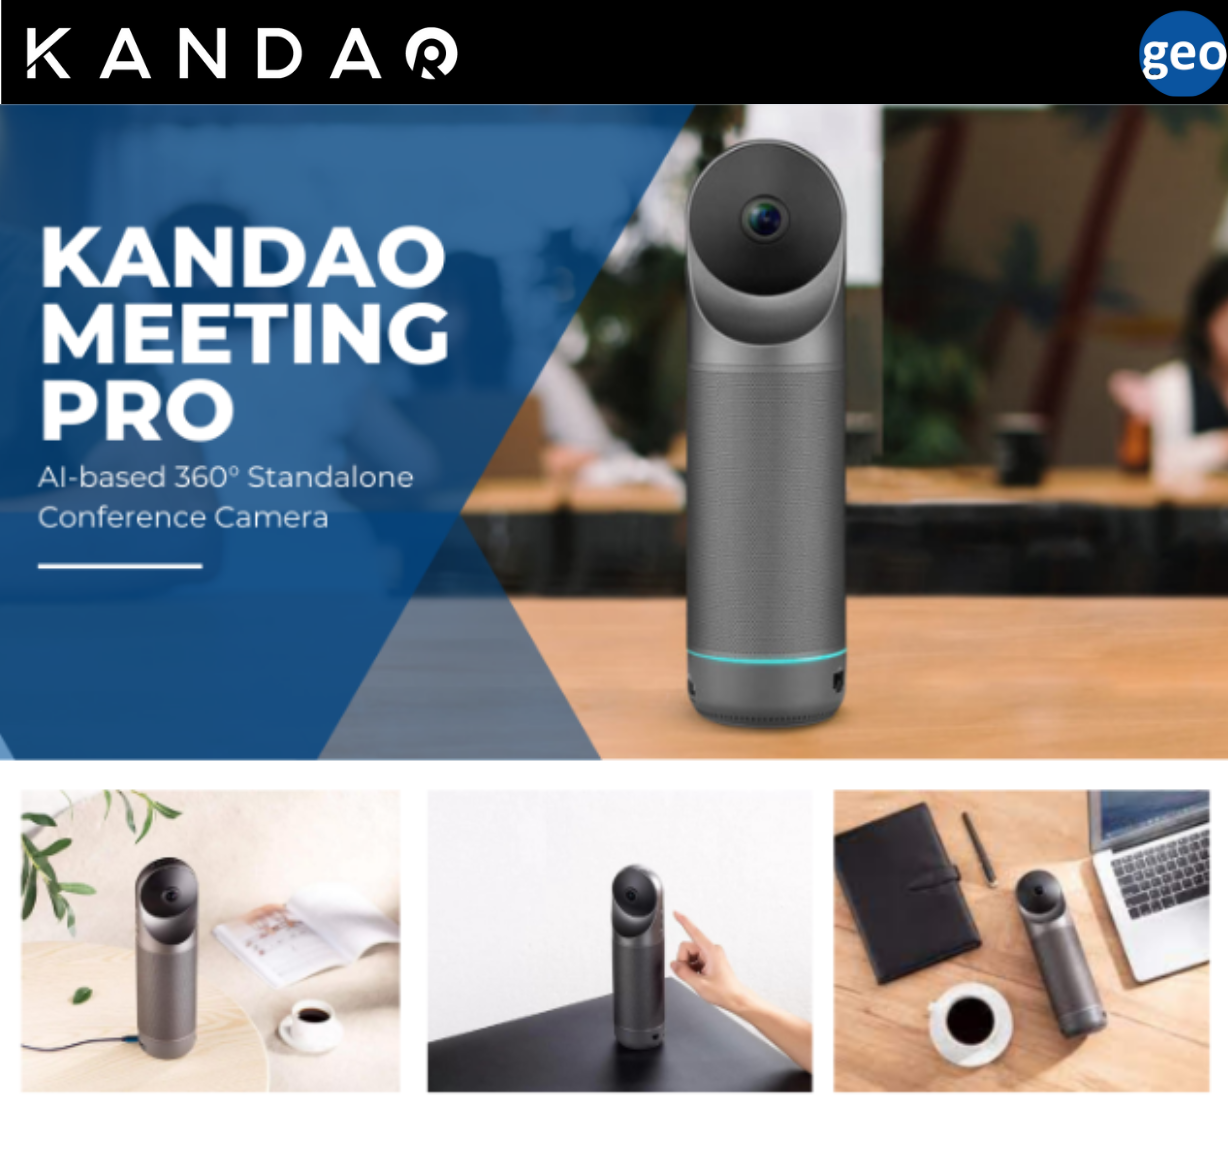 Kandao: Meeting Pro | 360 Standalone Conference Camera